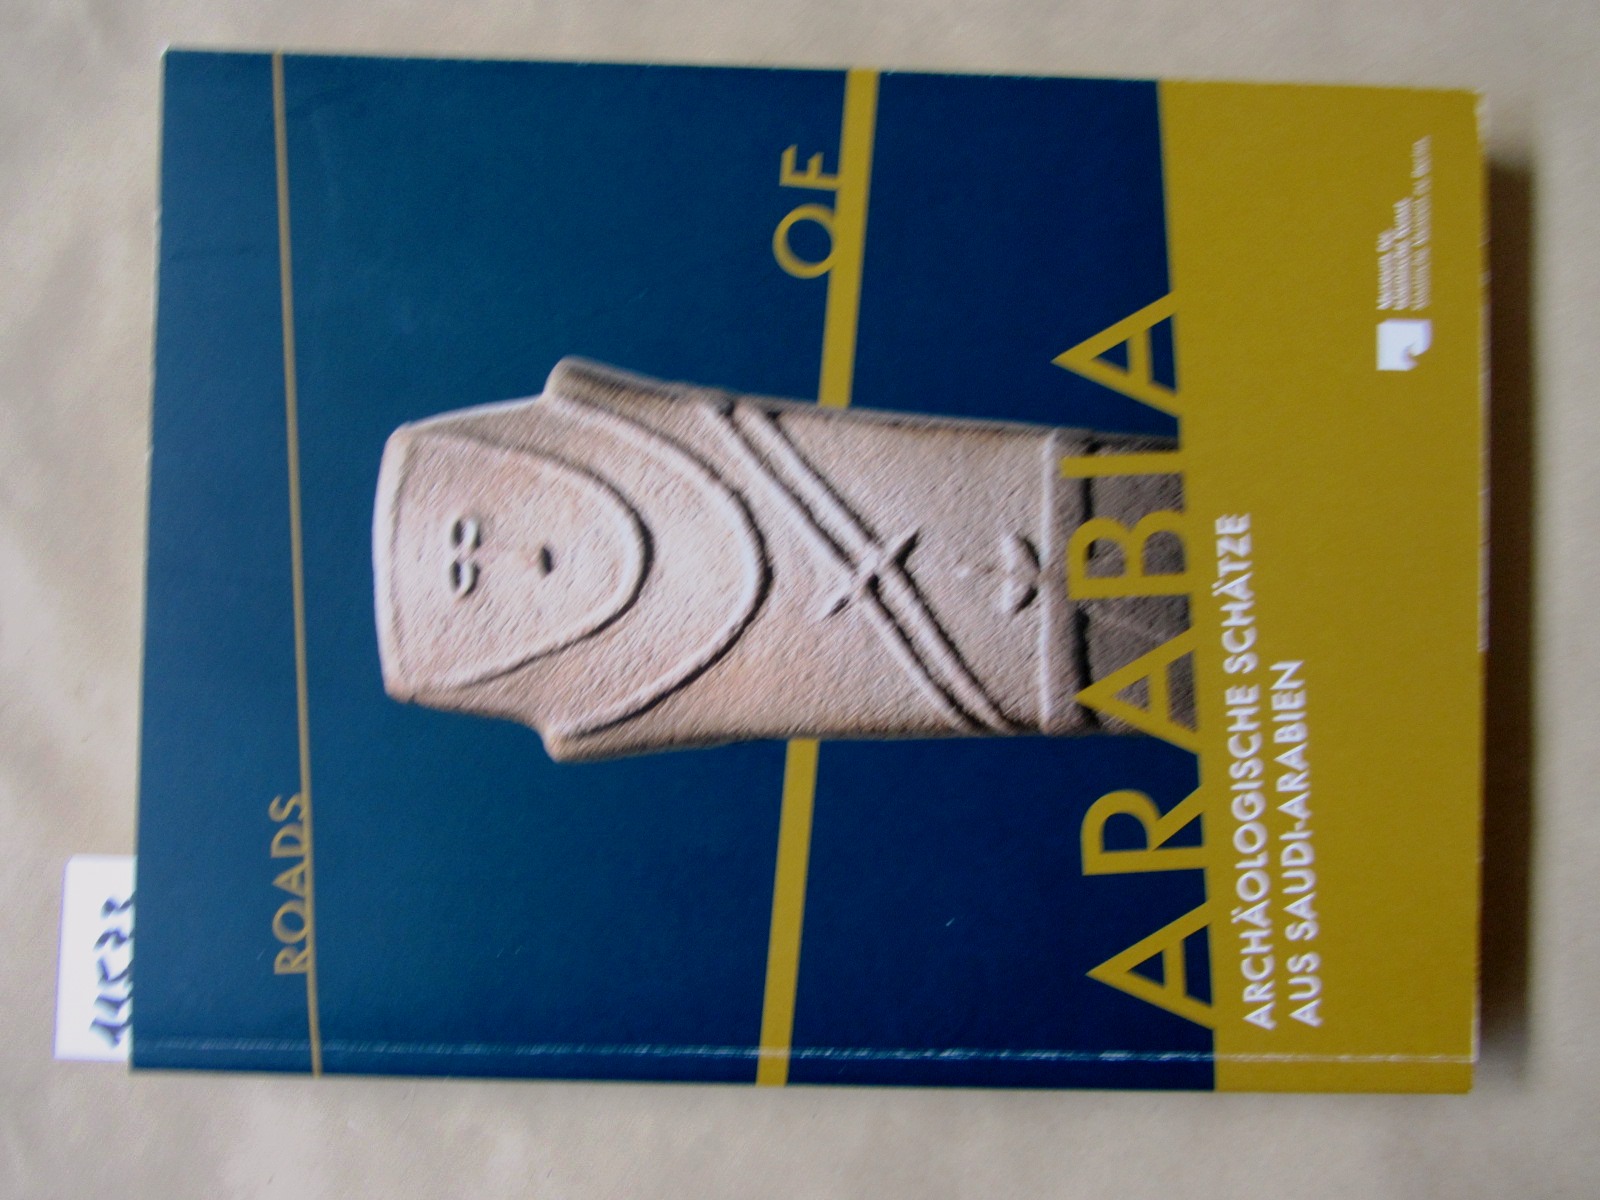 Museum für Islamische Kunst (Hrsg.):  Roads of Arabia. Archäologische Schätze aus Saudi-Arabien. Katalog zur Ausstellung. 